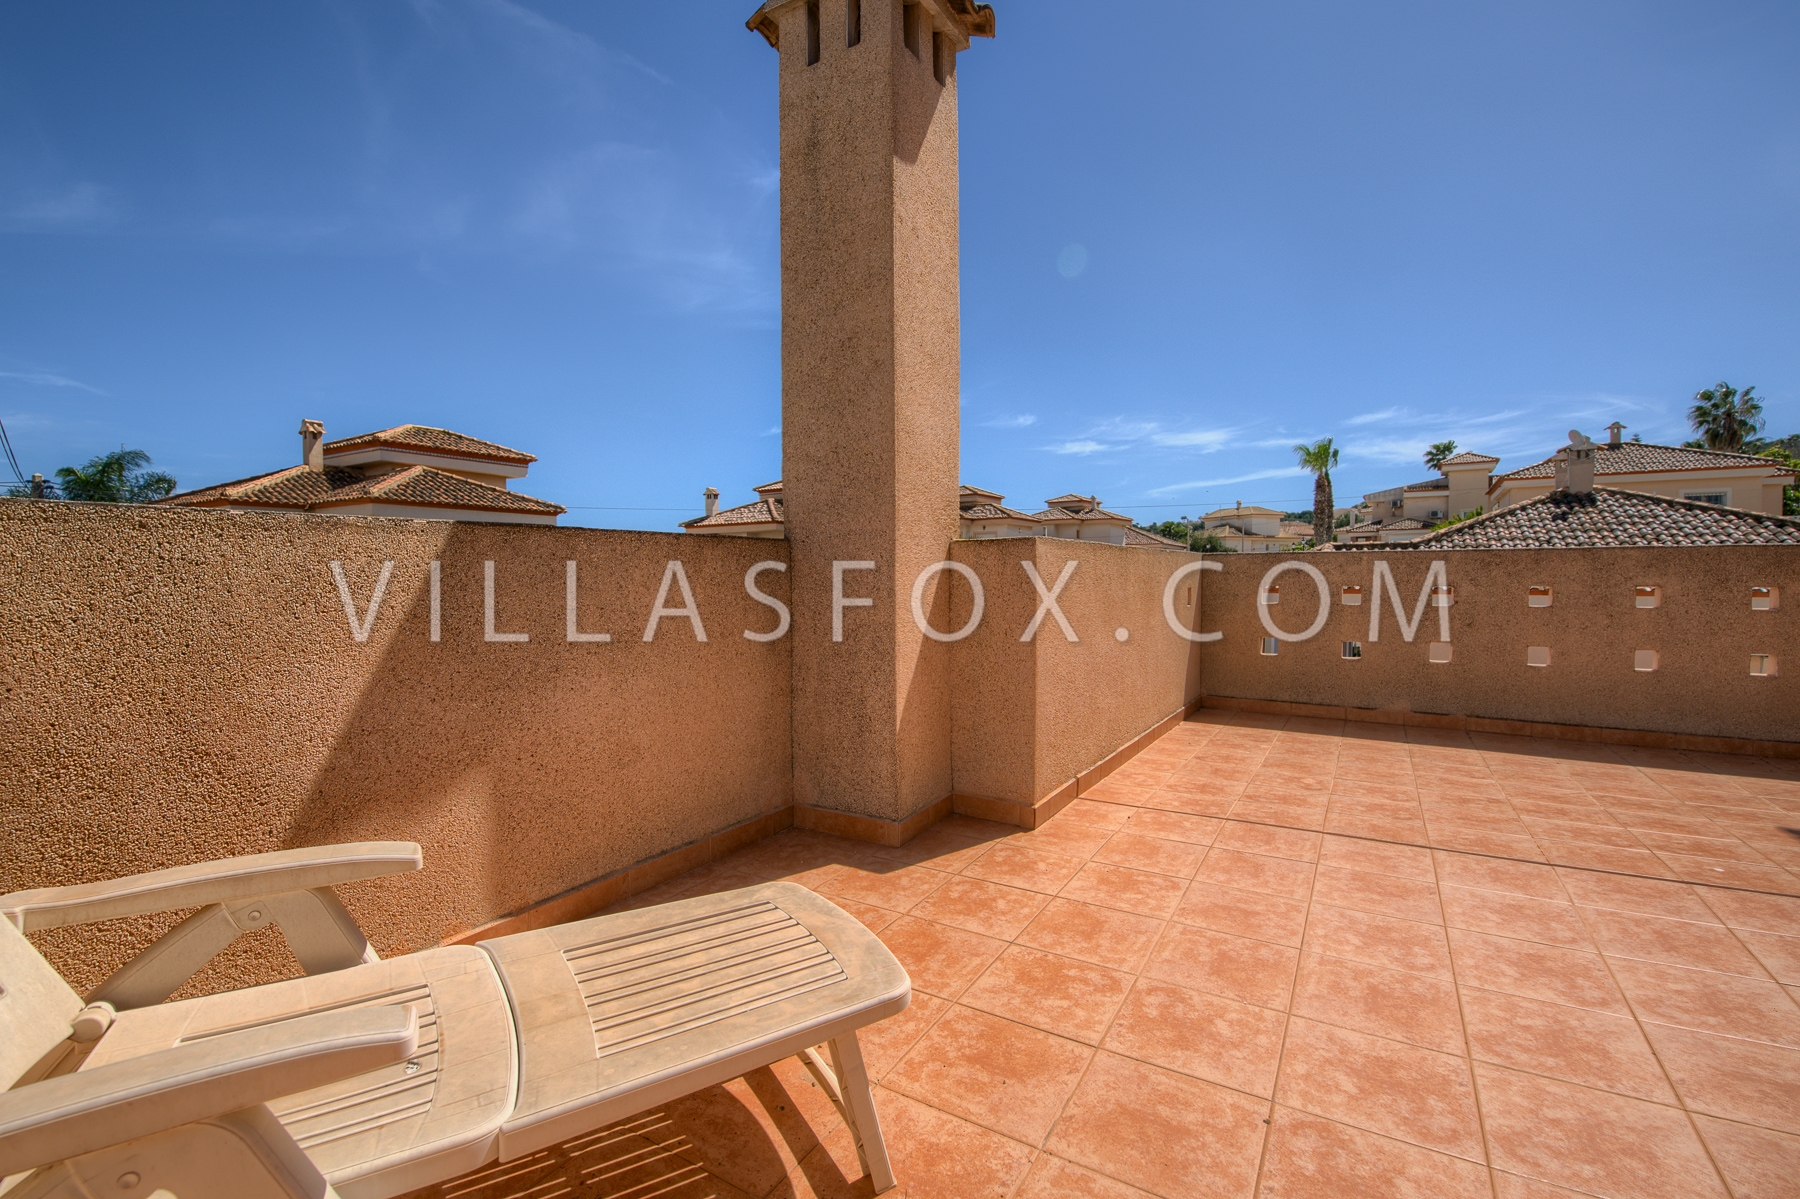 Torrestrella-Villa zu verkaufen Las Comunicaciones San Miguel de Salinas Villas Fox-03